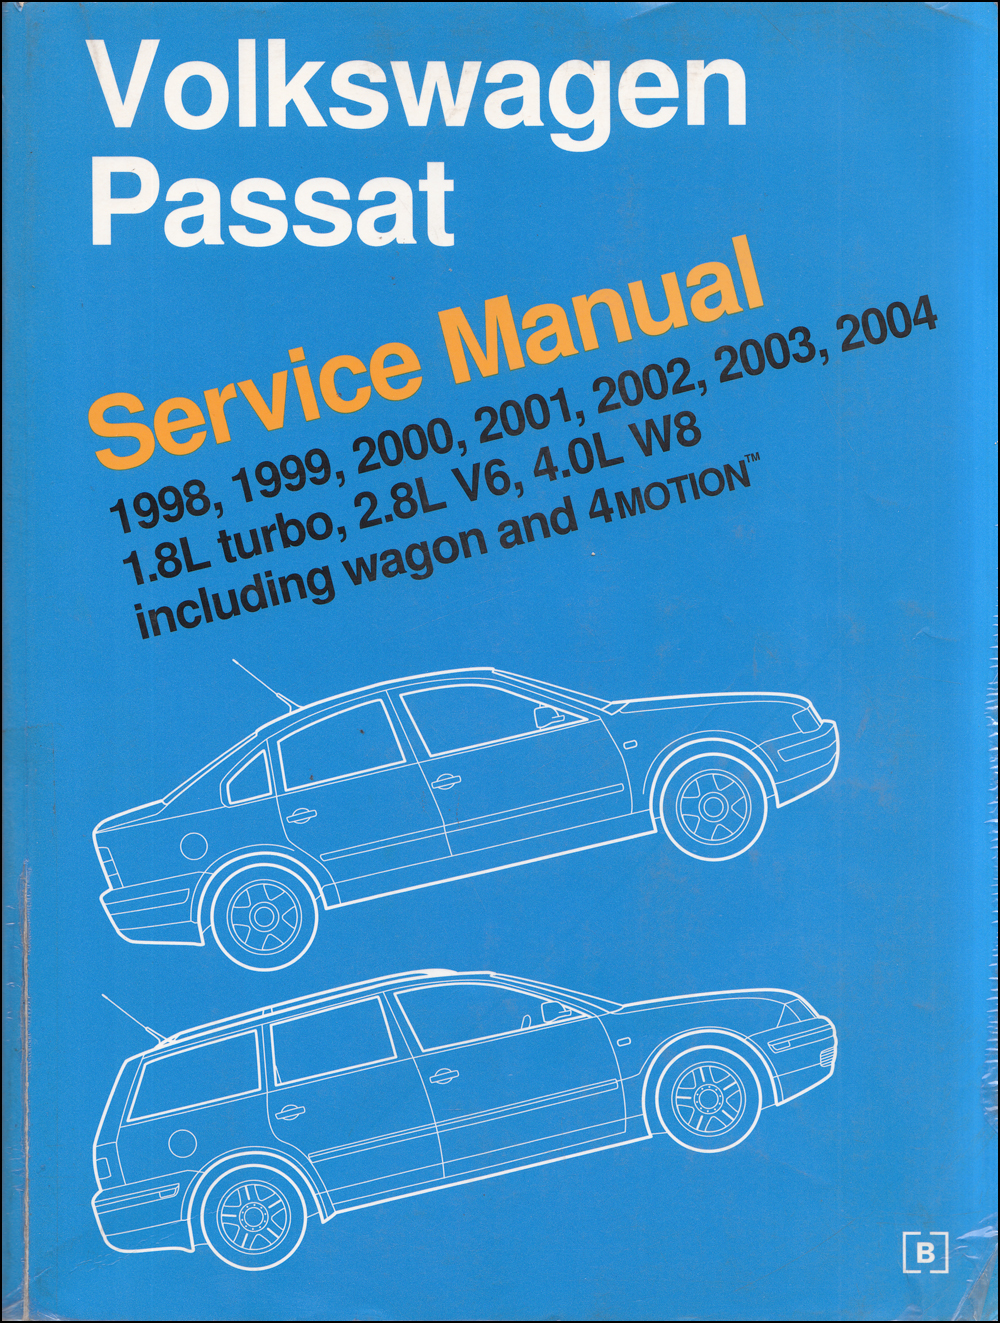 1999-2005 VW Jetta, Golf, GTI Bentley Repair Manual